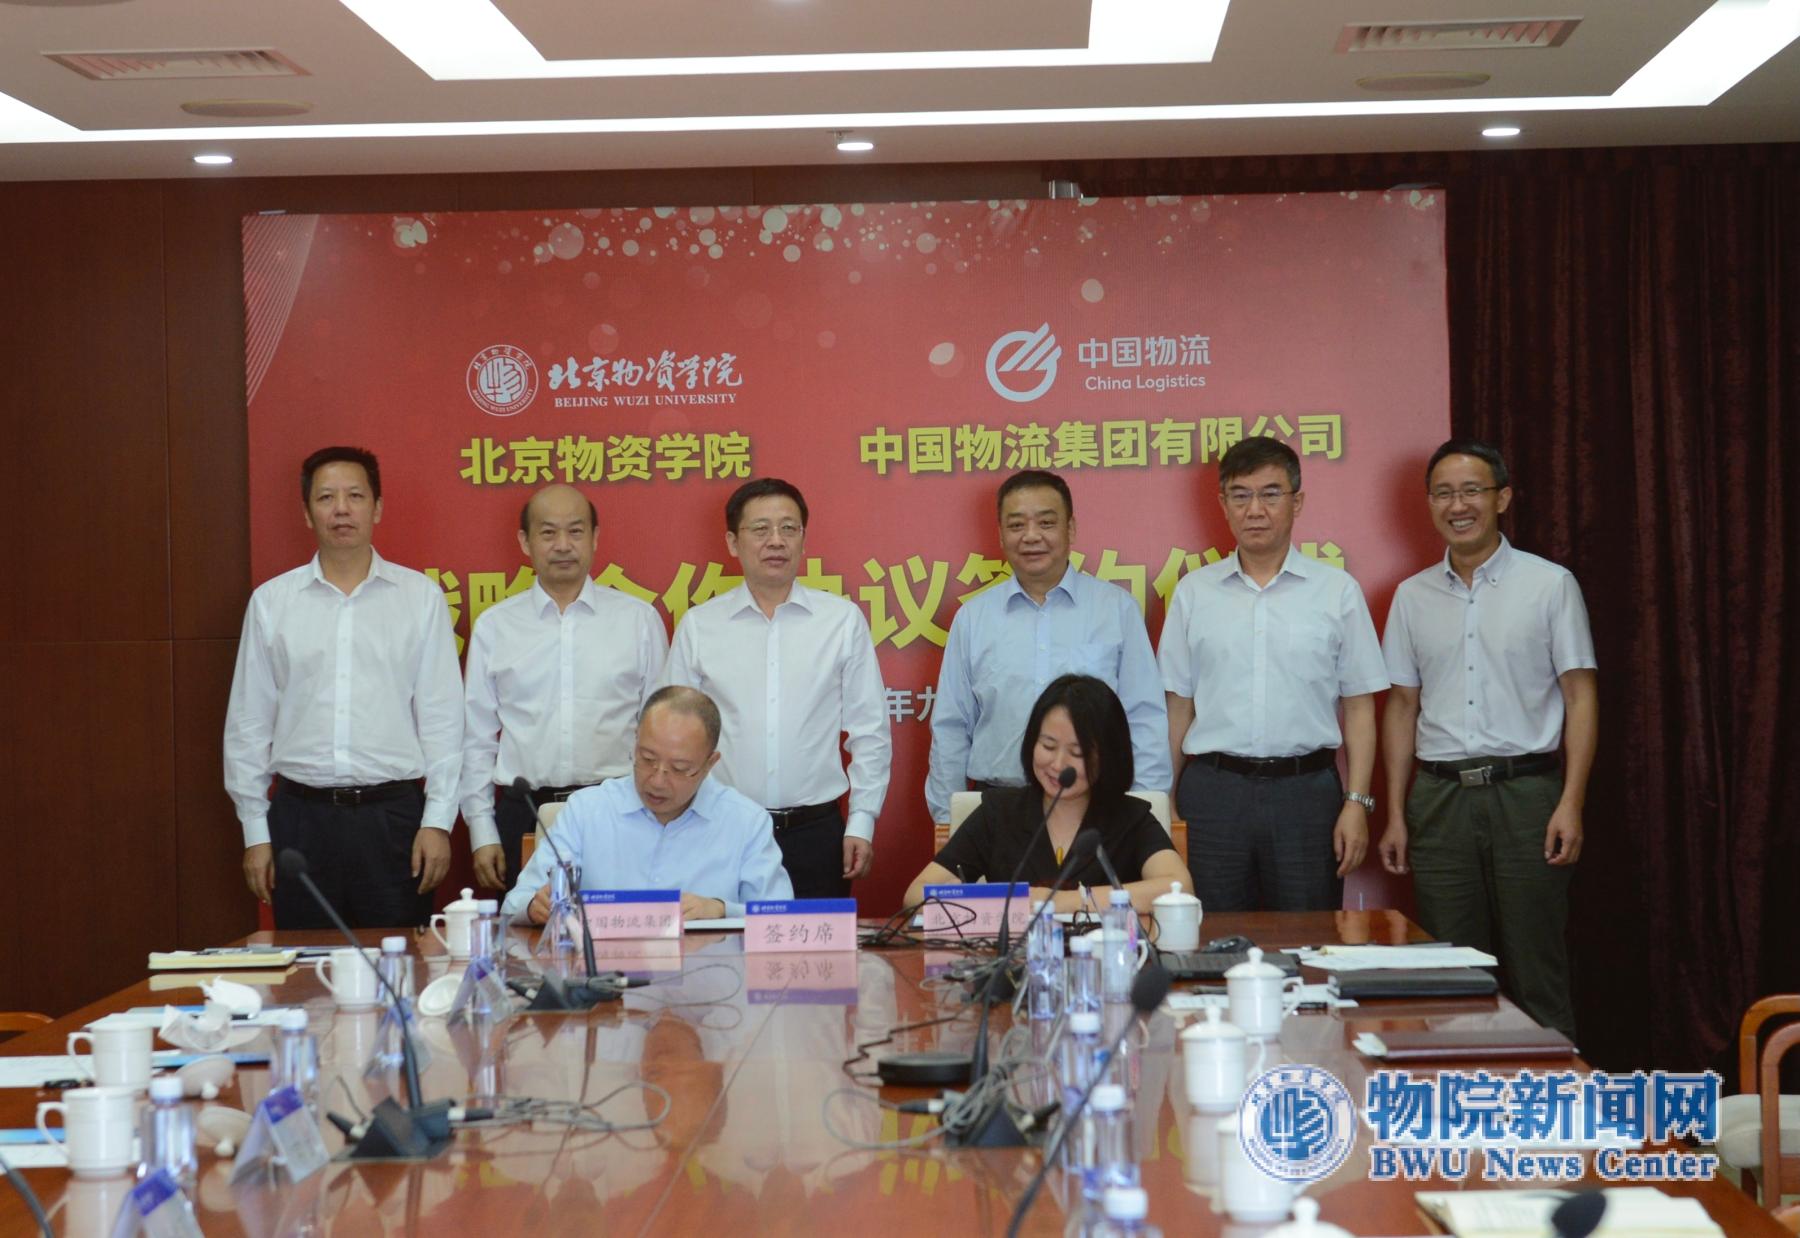 我校与中国物流集团签署战略合作协议